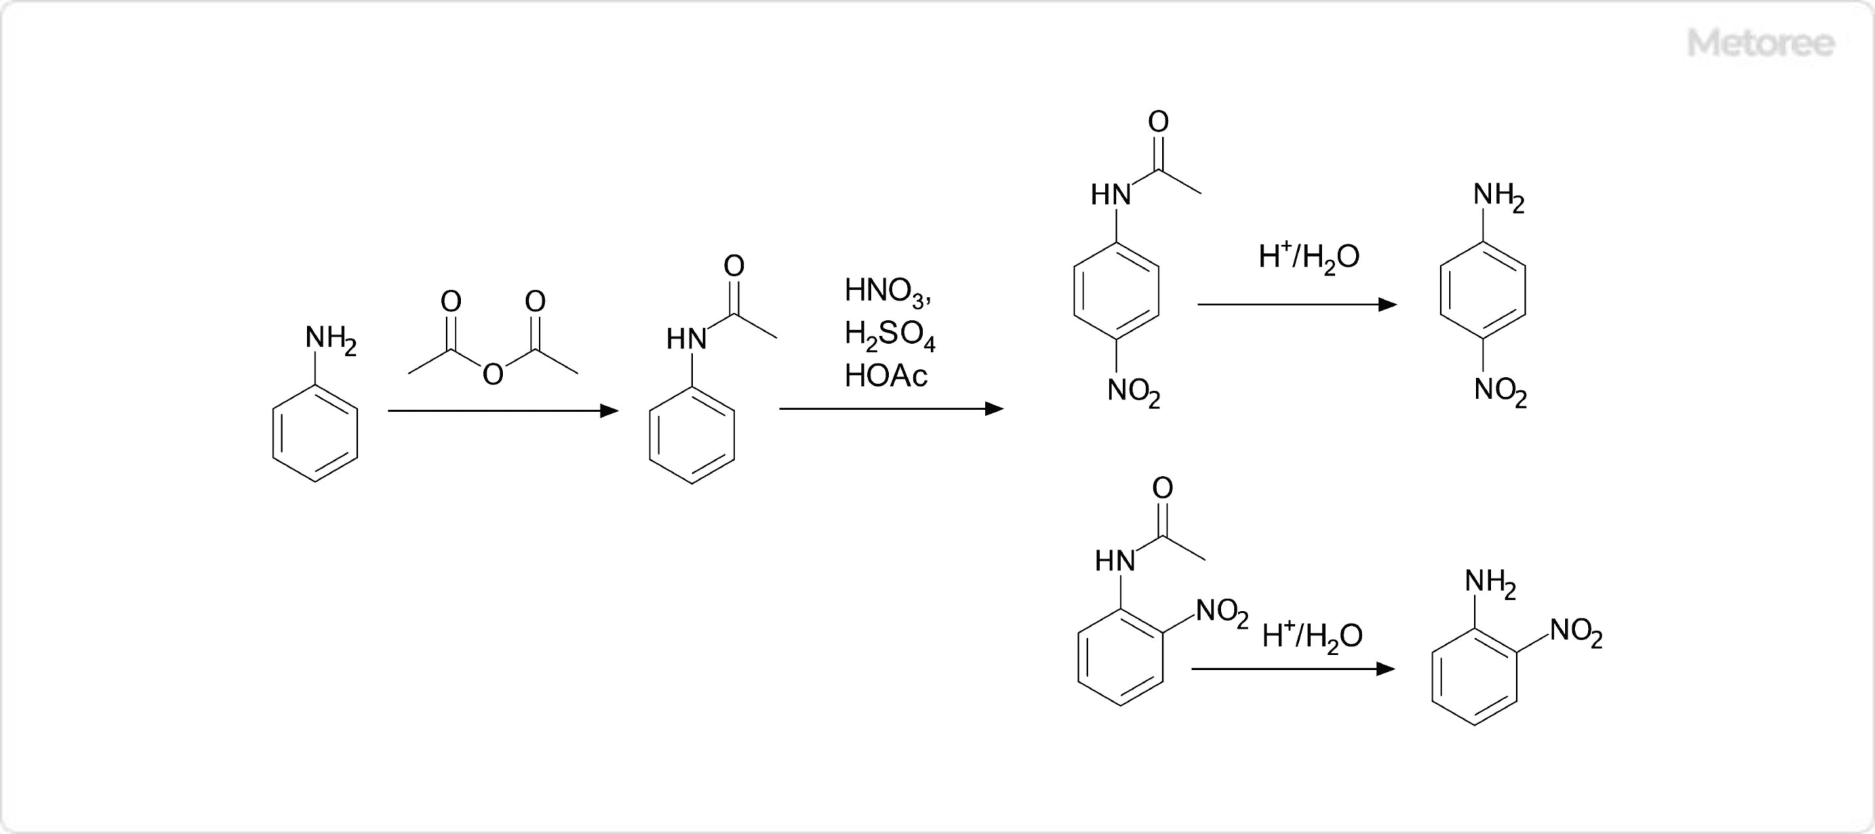 2-ニトロアニリン・4-ニトロアニリンの合成